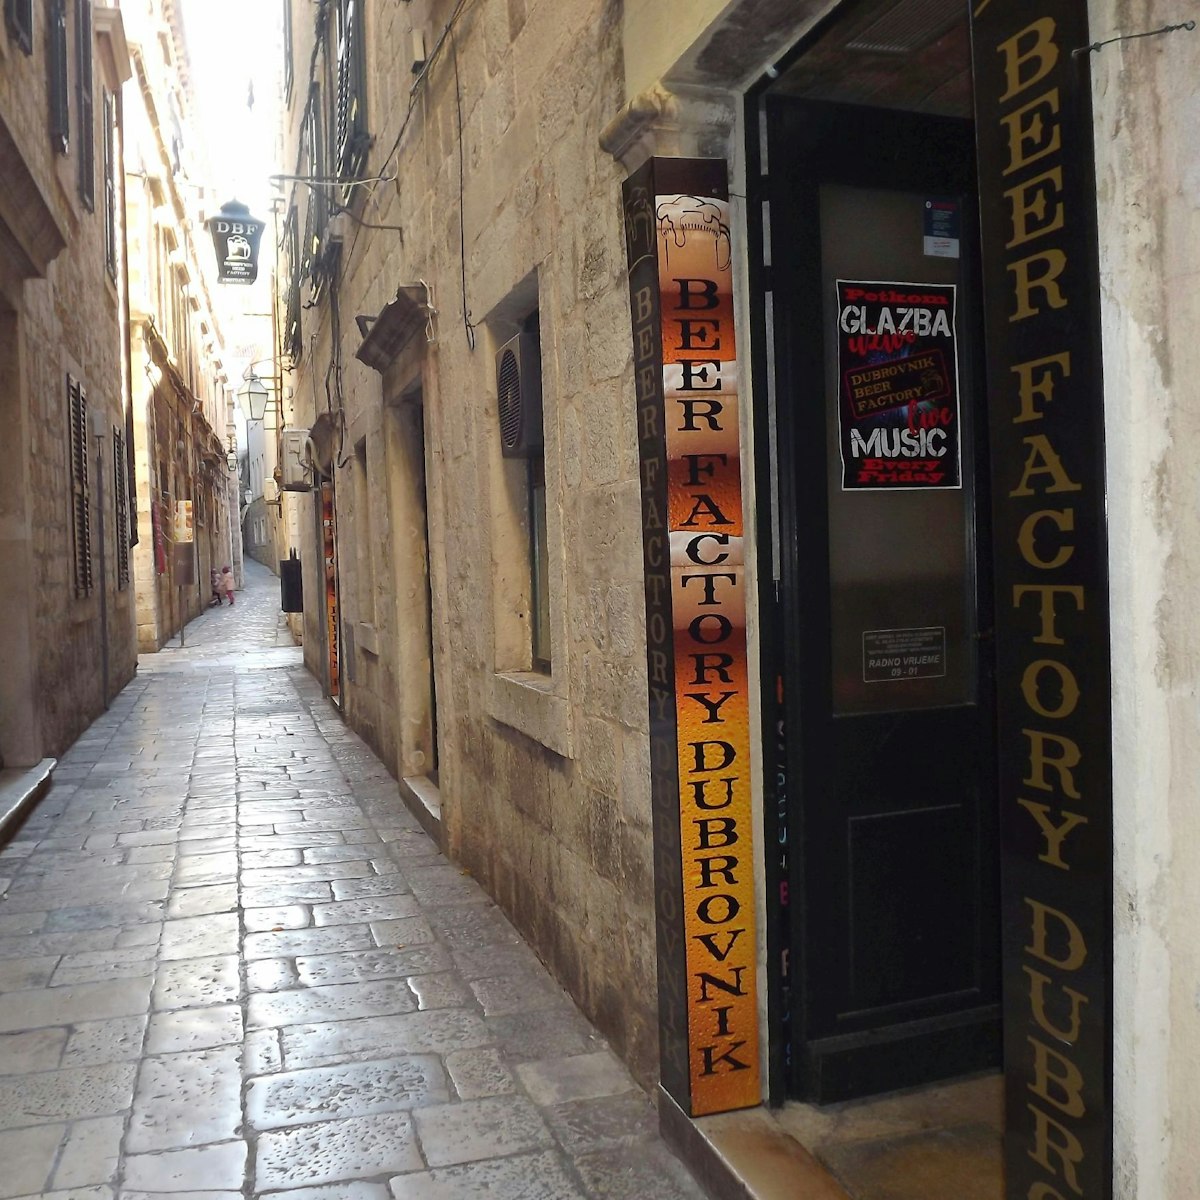 The poker-face entrance of Dubrovnik Beer Factory hides a splendid interior